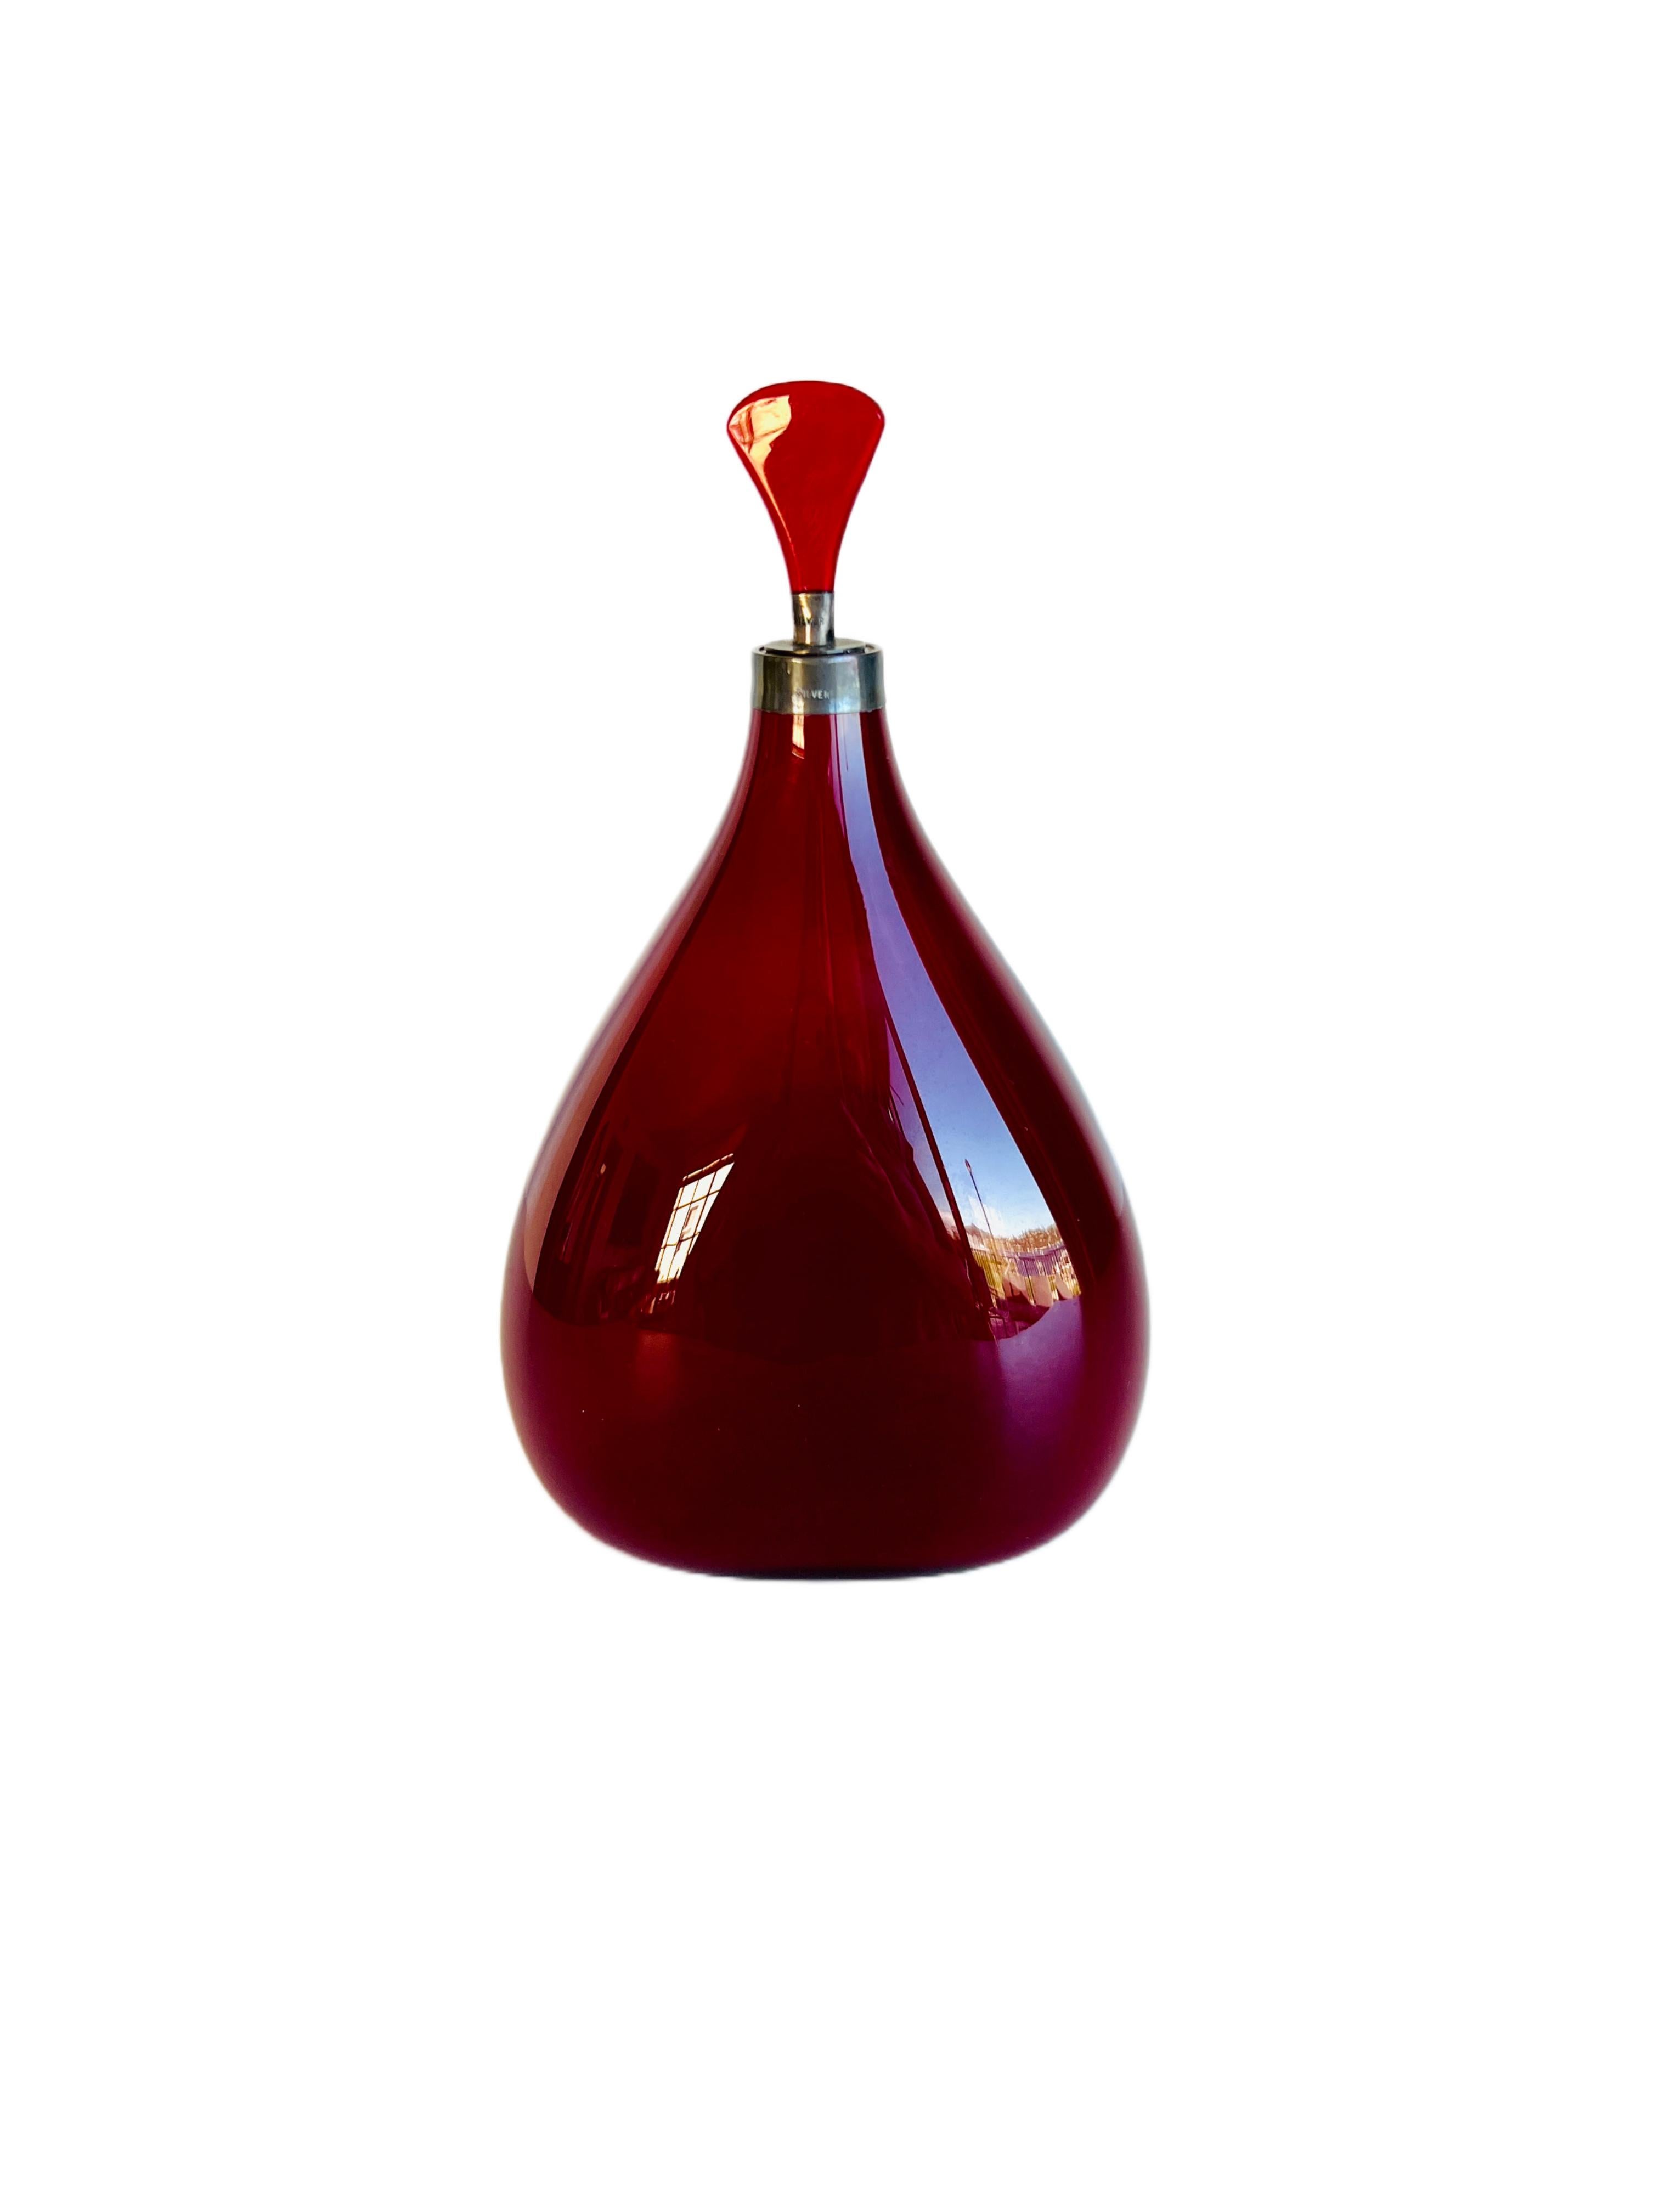 Cette charmante bouteille est assez grande, puisqu'elle mesure 7 pouces de haut. Il est d'une belle couleur rouge rubis presque opaque. Il n'y a pas de coutures dans la bouteille. Il n'y a qu'une couture dans la bouche d'argent. Le bouchon est en